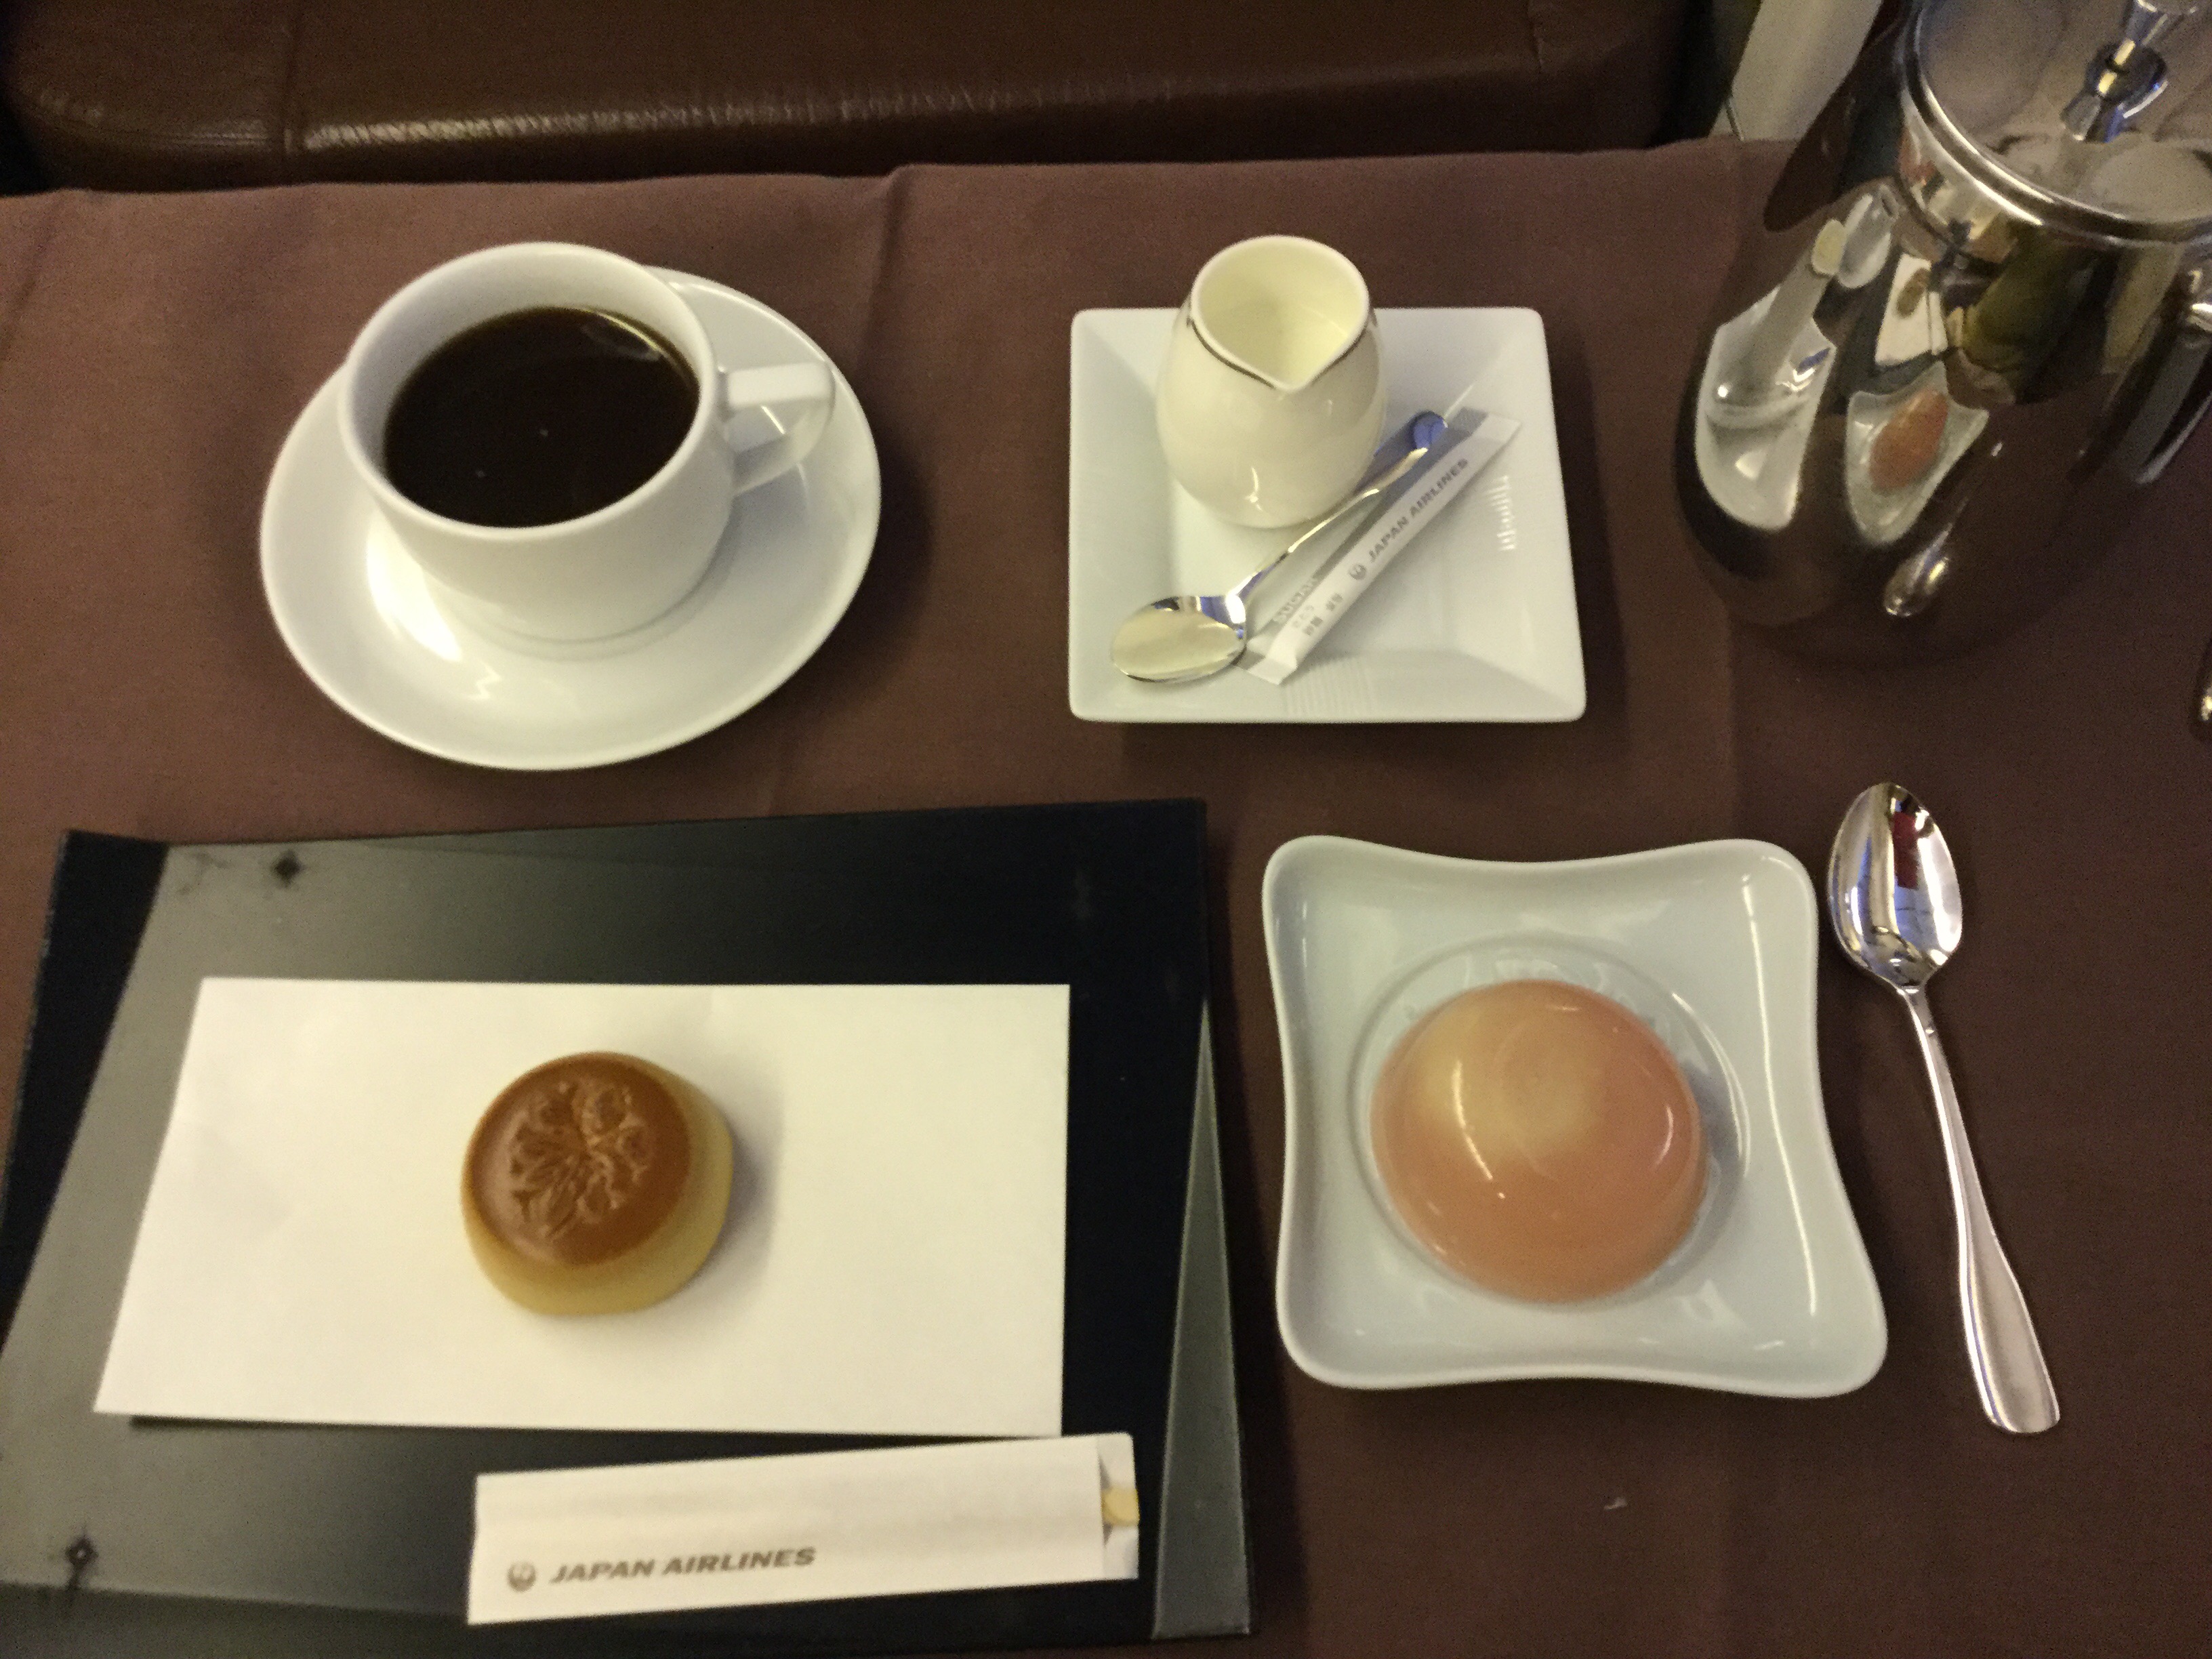 JAL First Class dessert